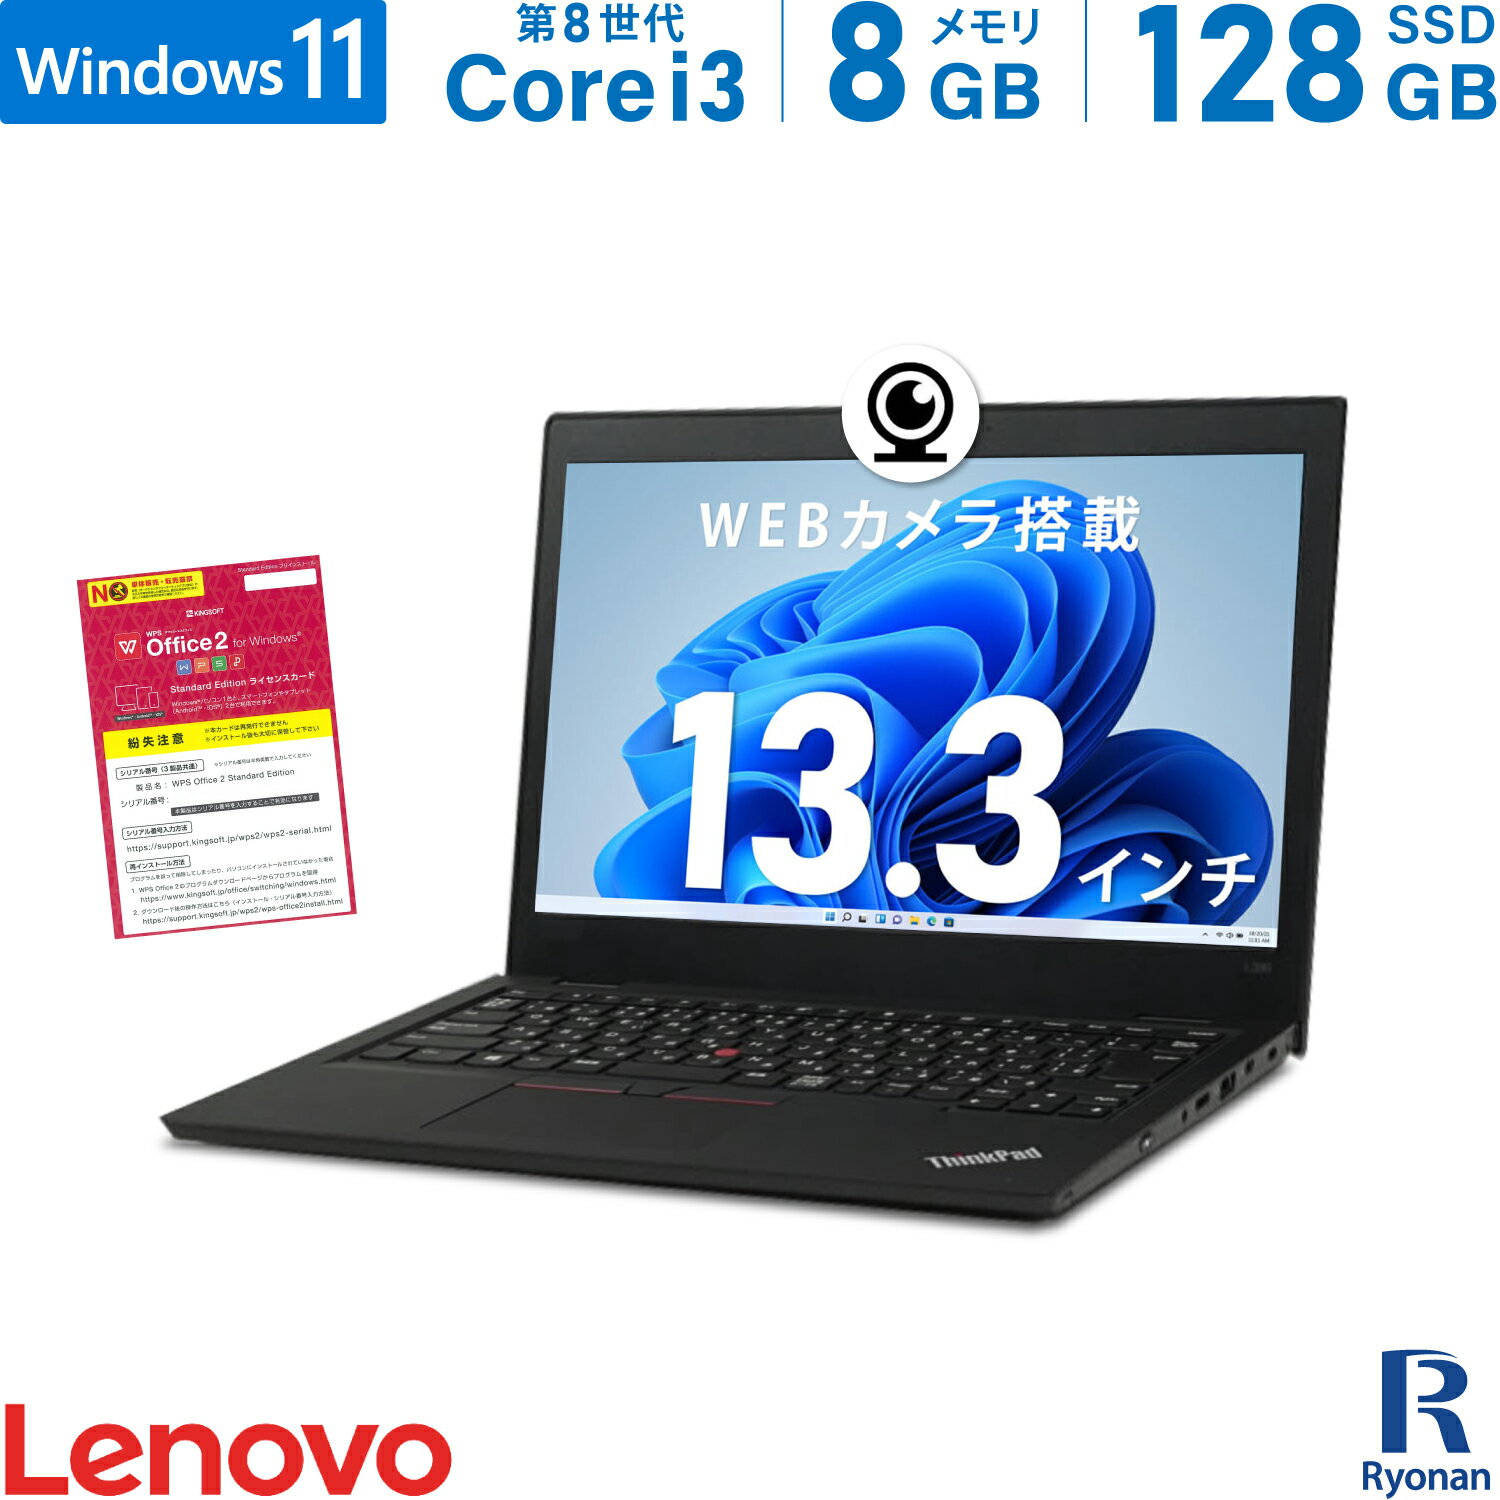 【スーパーSALE 10%OFF】Lenovo ThinkPad L380 第8世代 Core i3 メモリ:8GB M.2 SSD:128GB ノートパソコン 13.3インチ 無線LAN HDMI SDカードスロット Office付 パソコン 中古パソコン Windows…